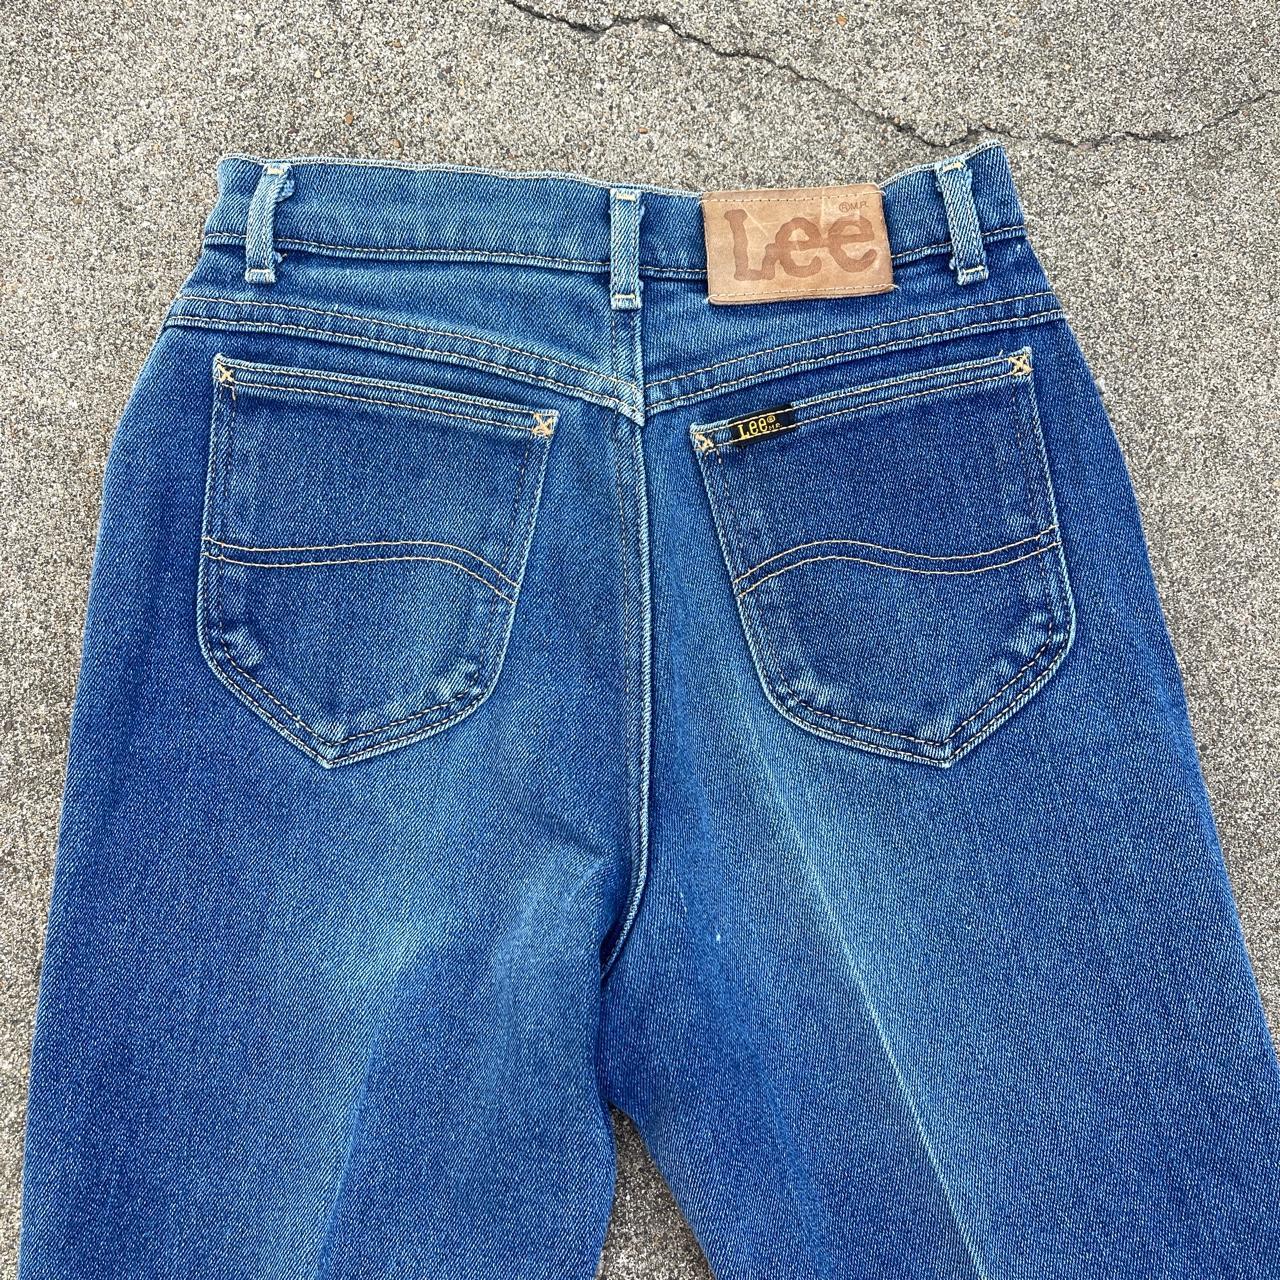 Vintage Lee denim jeans USA made - marked size 10... - Depop